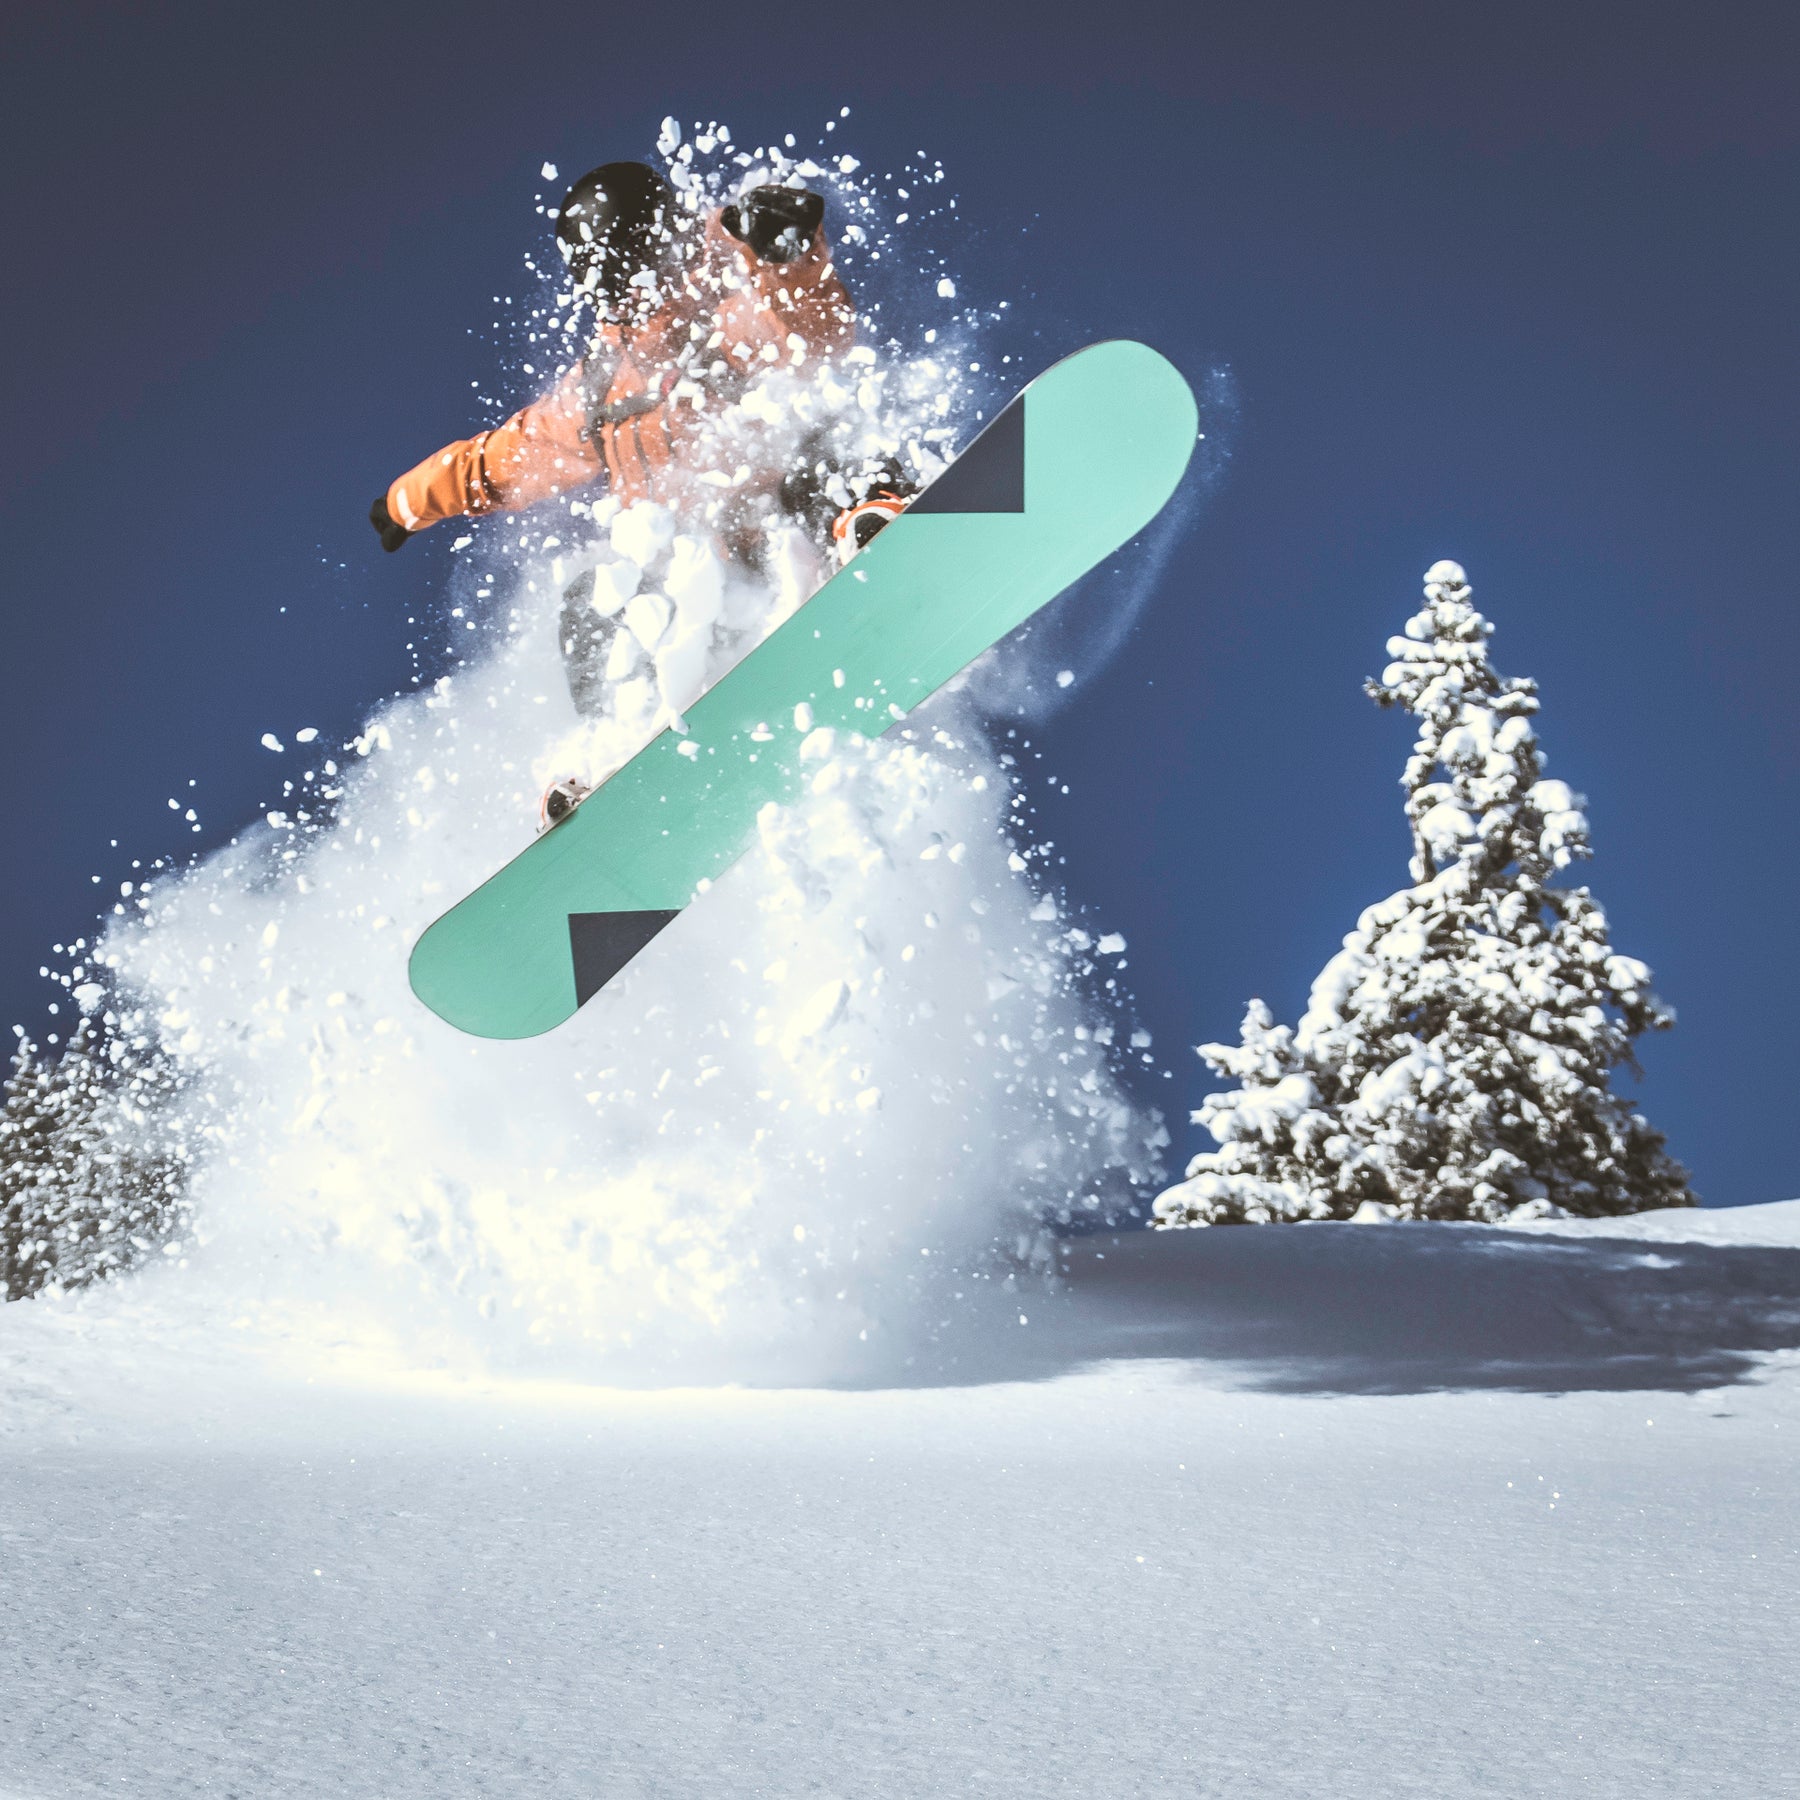 Loaded Boards "The Algernon" Snowboard